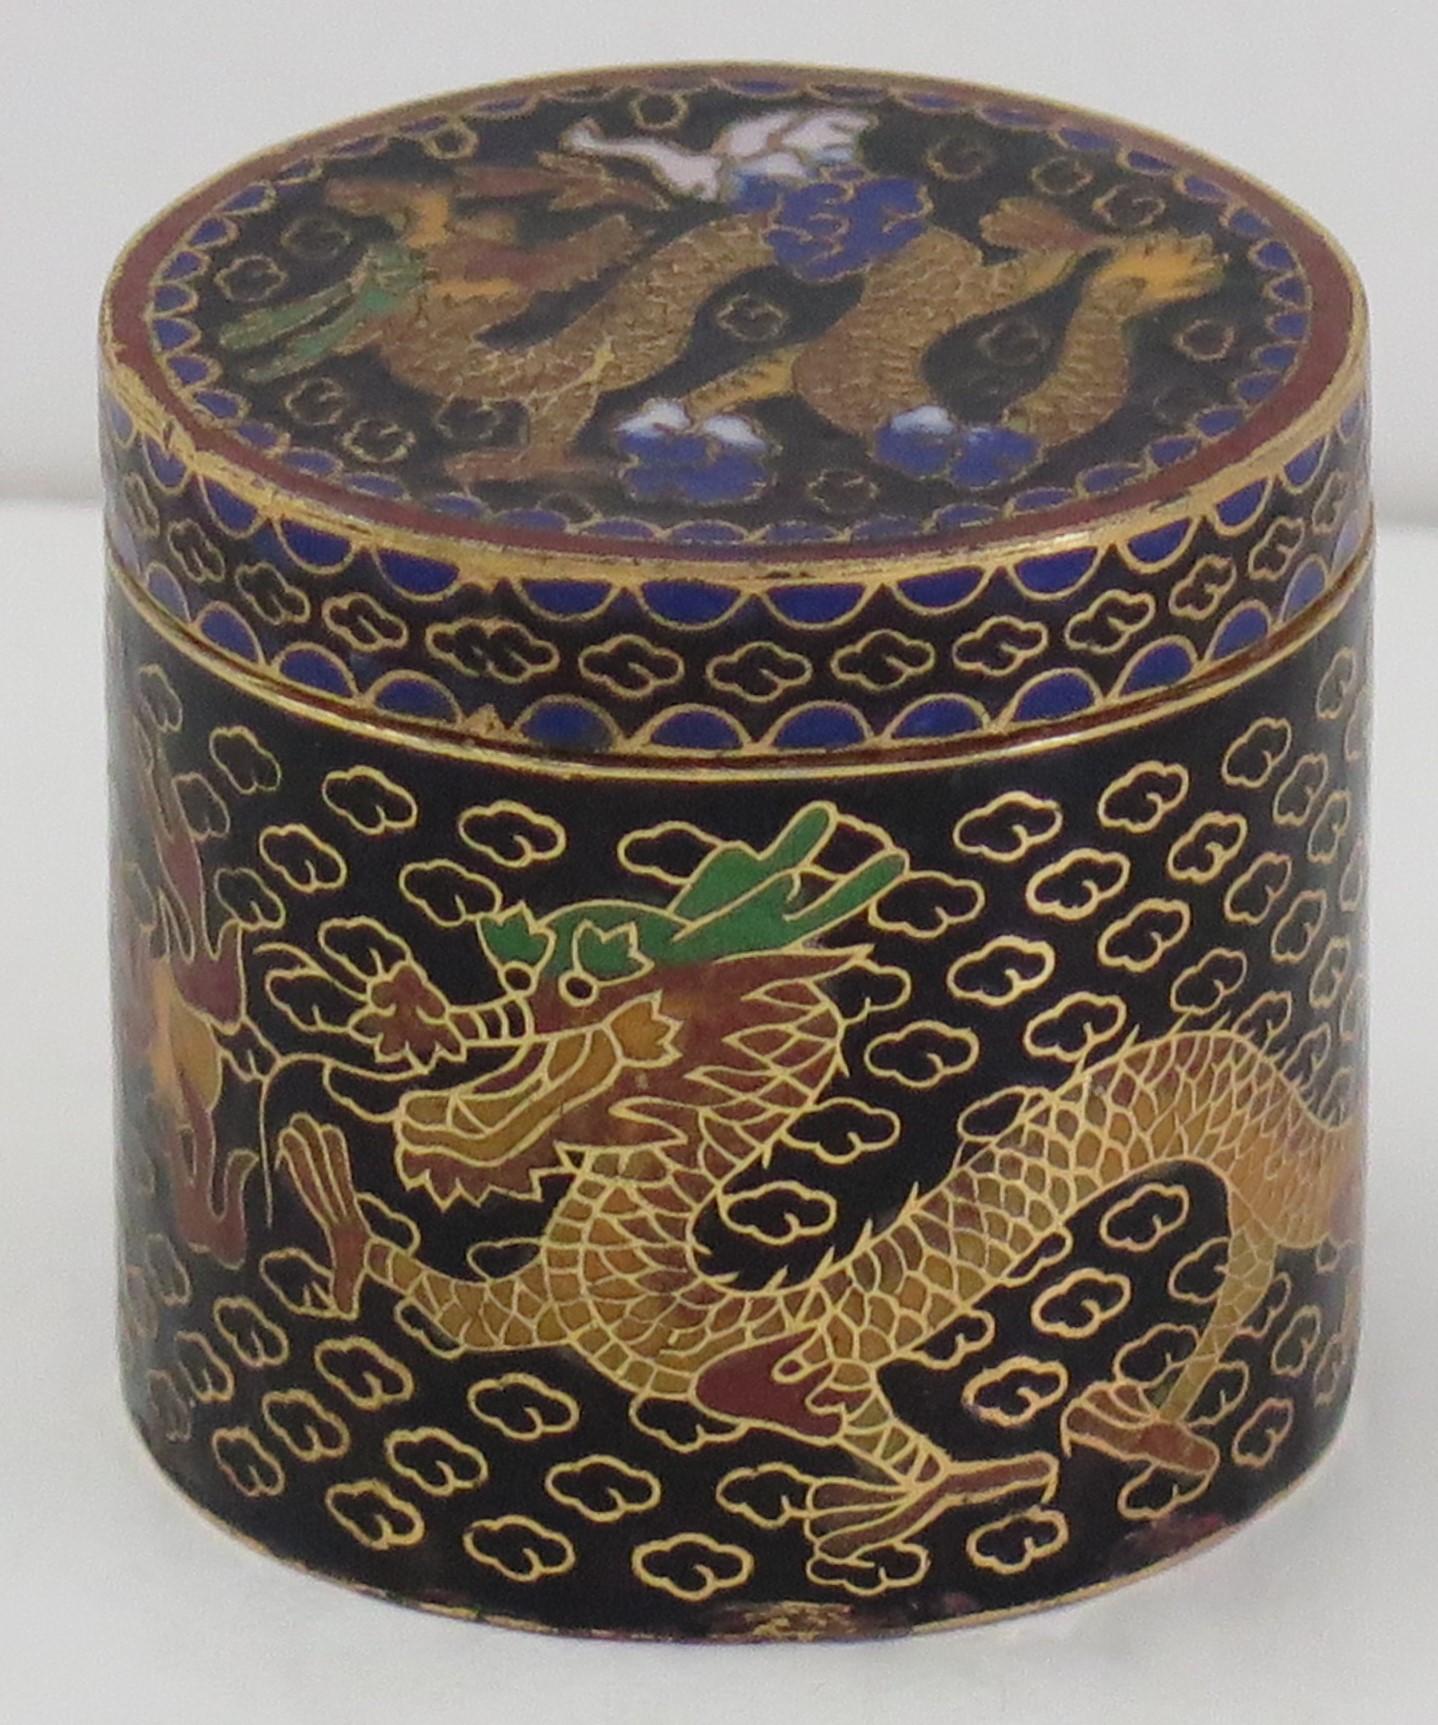 Il s'agit d'une boîte à couvercle cloisonné chinoise très décorative que nous datons du milieu du 20e siècle.

La boîte est de forme cylindrique, avec son couvercle d'origine, et est magnifiquement réalisée avec des émaux colorés sur fond noir.